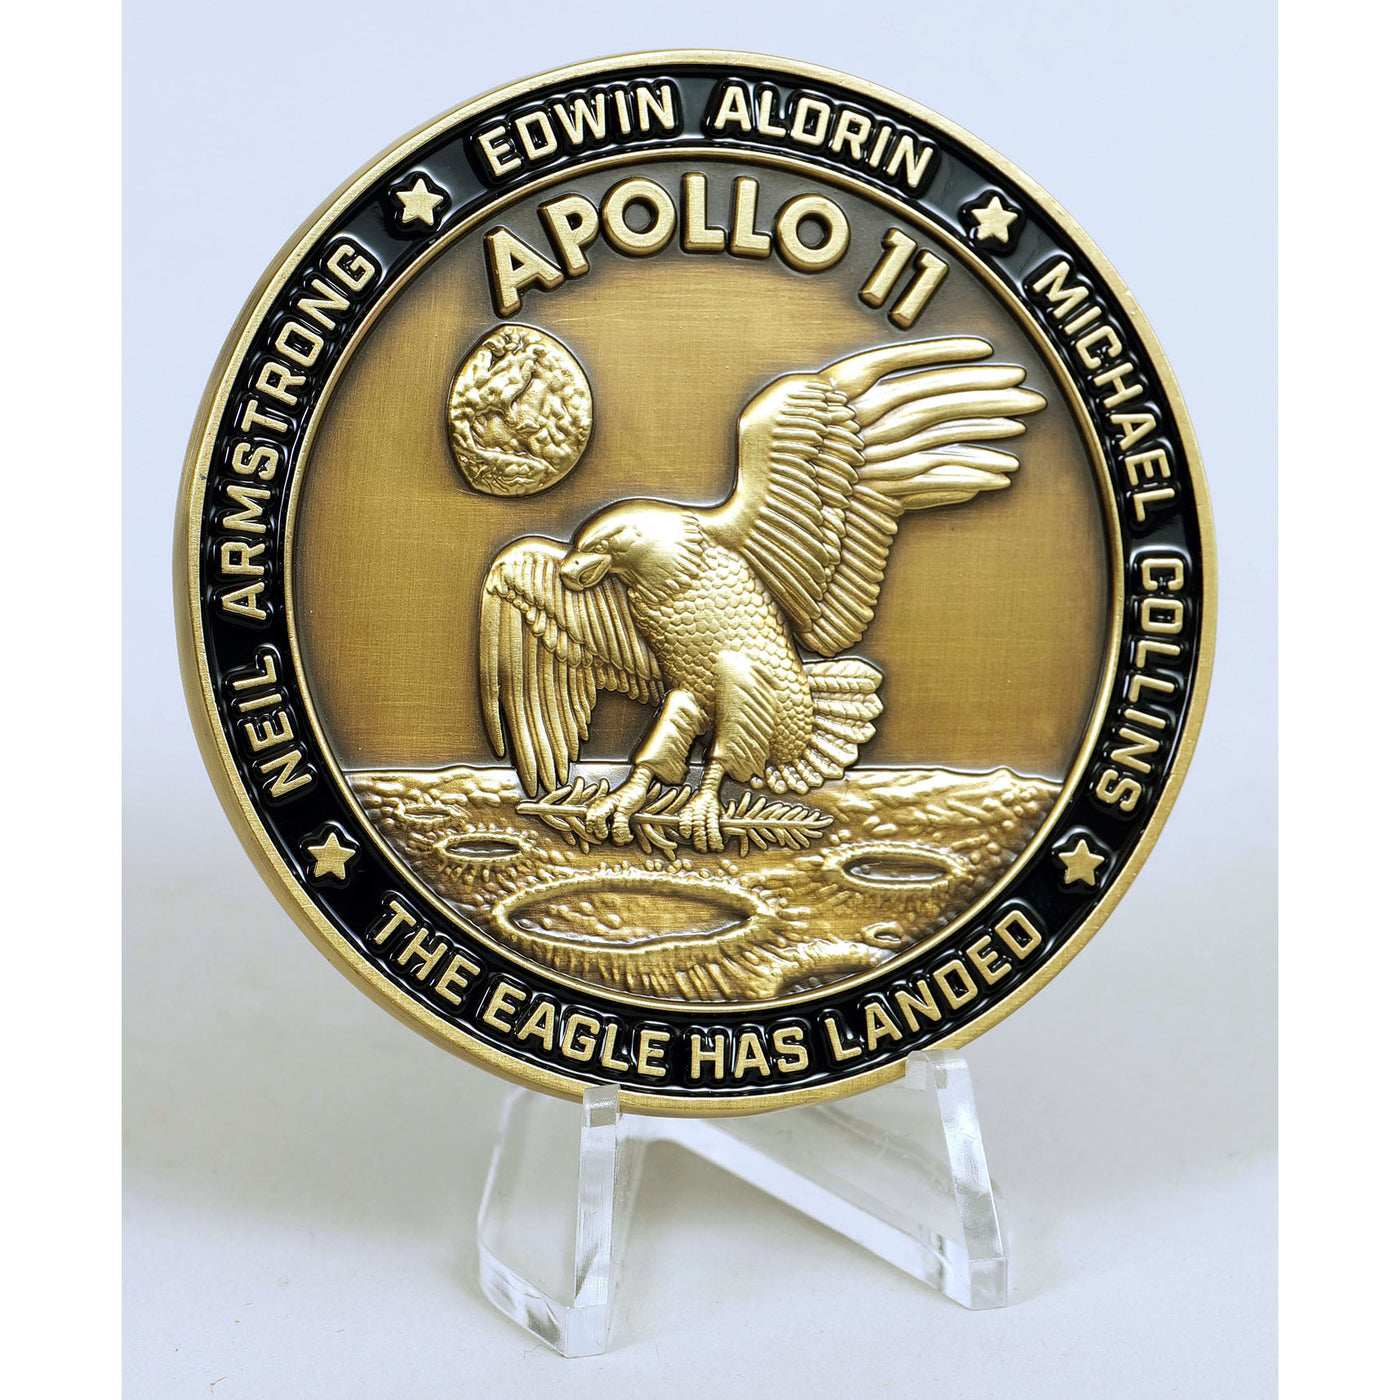 Apollo 11 medallion with large visible flown Kapton foil piece